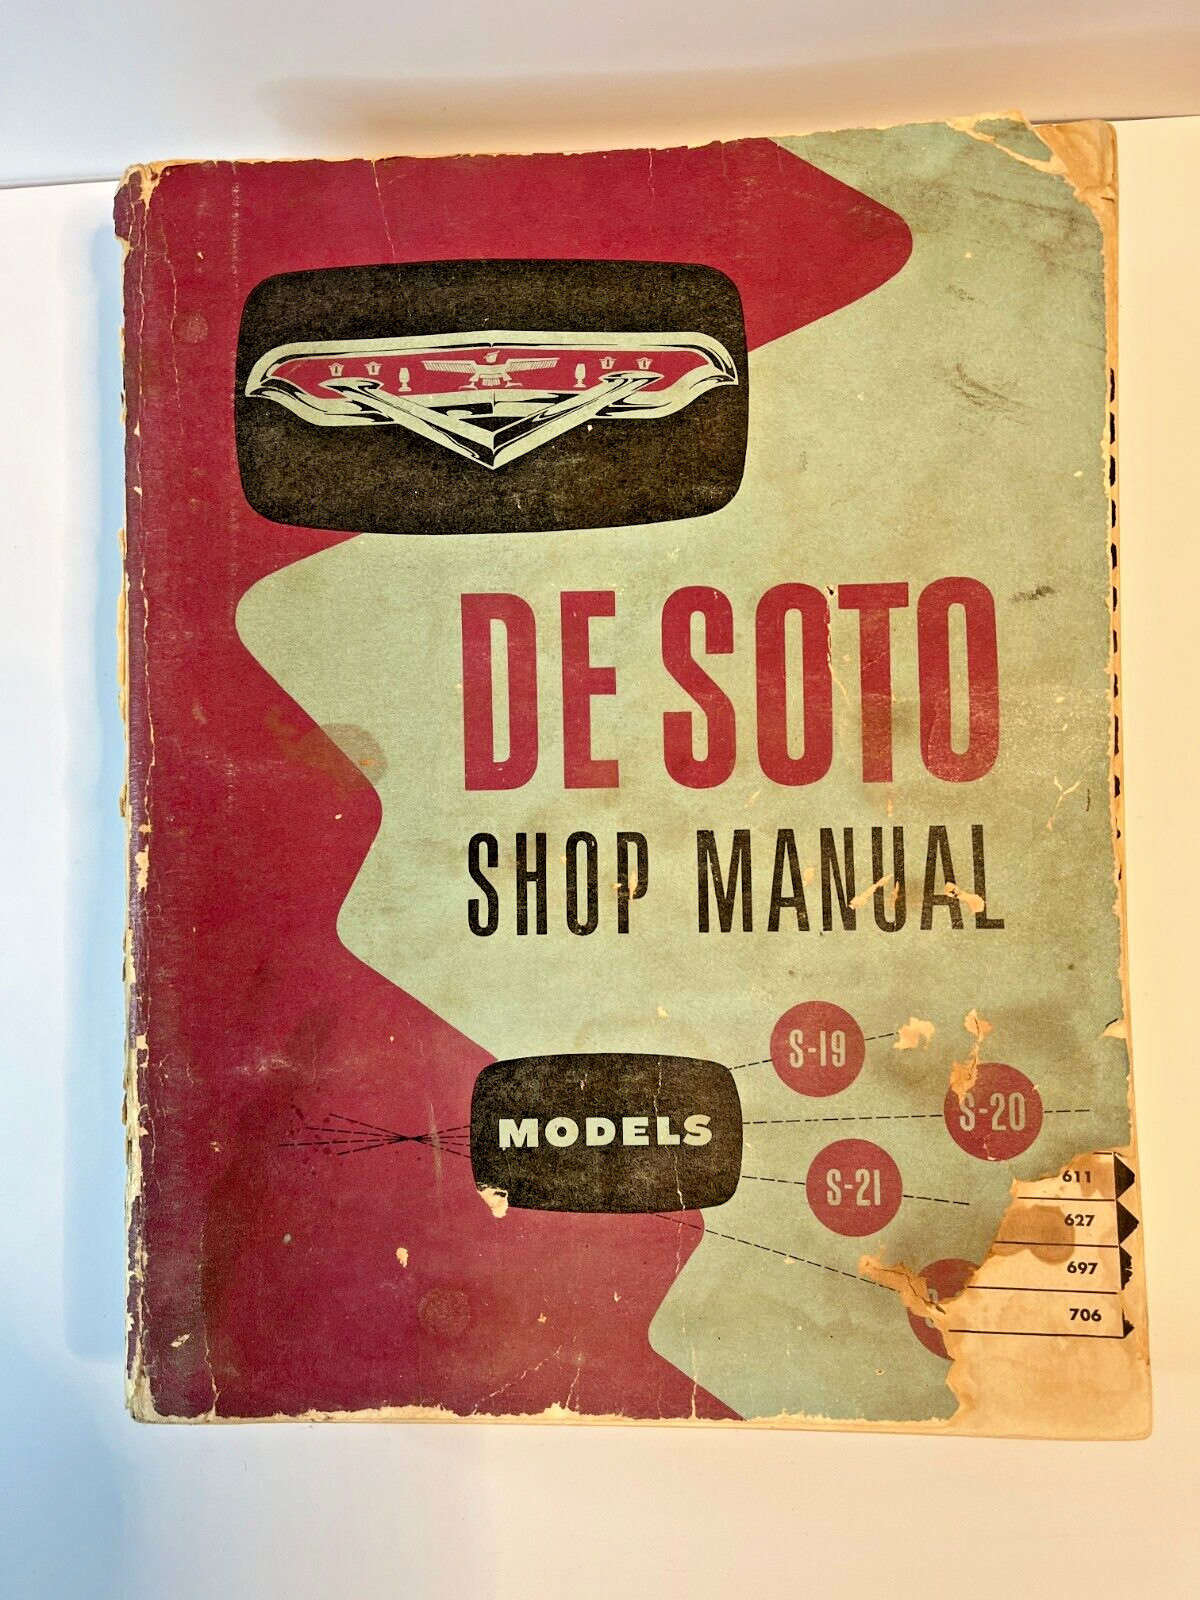 De Soto Shop Manual 1954-1955 Models S-19, S-20, S-21, & S-22 Original Book